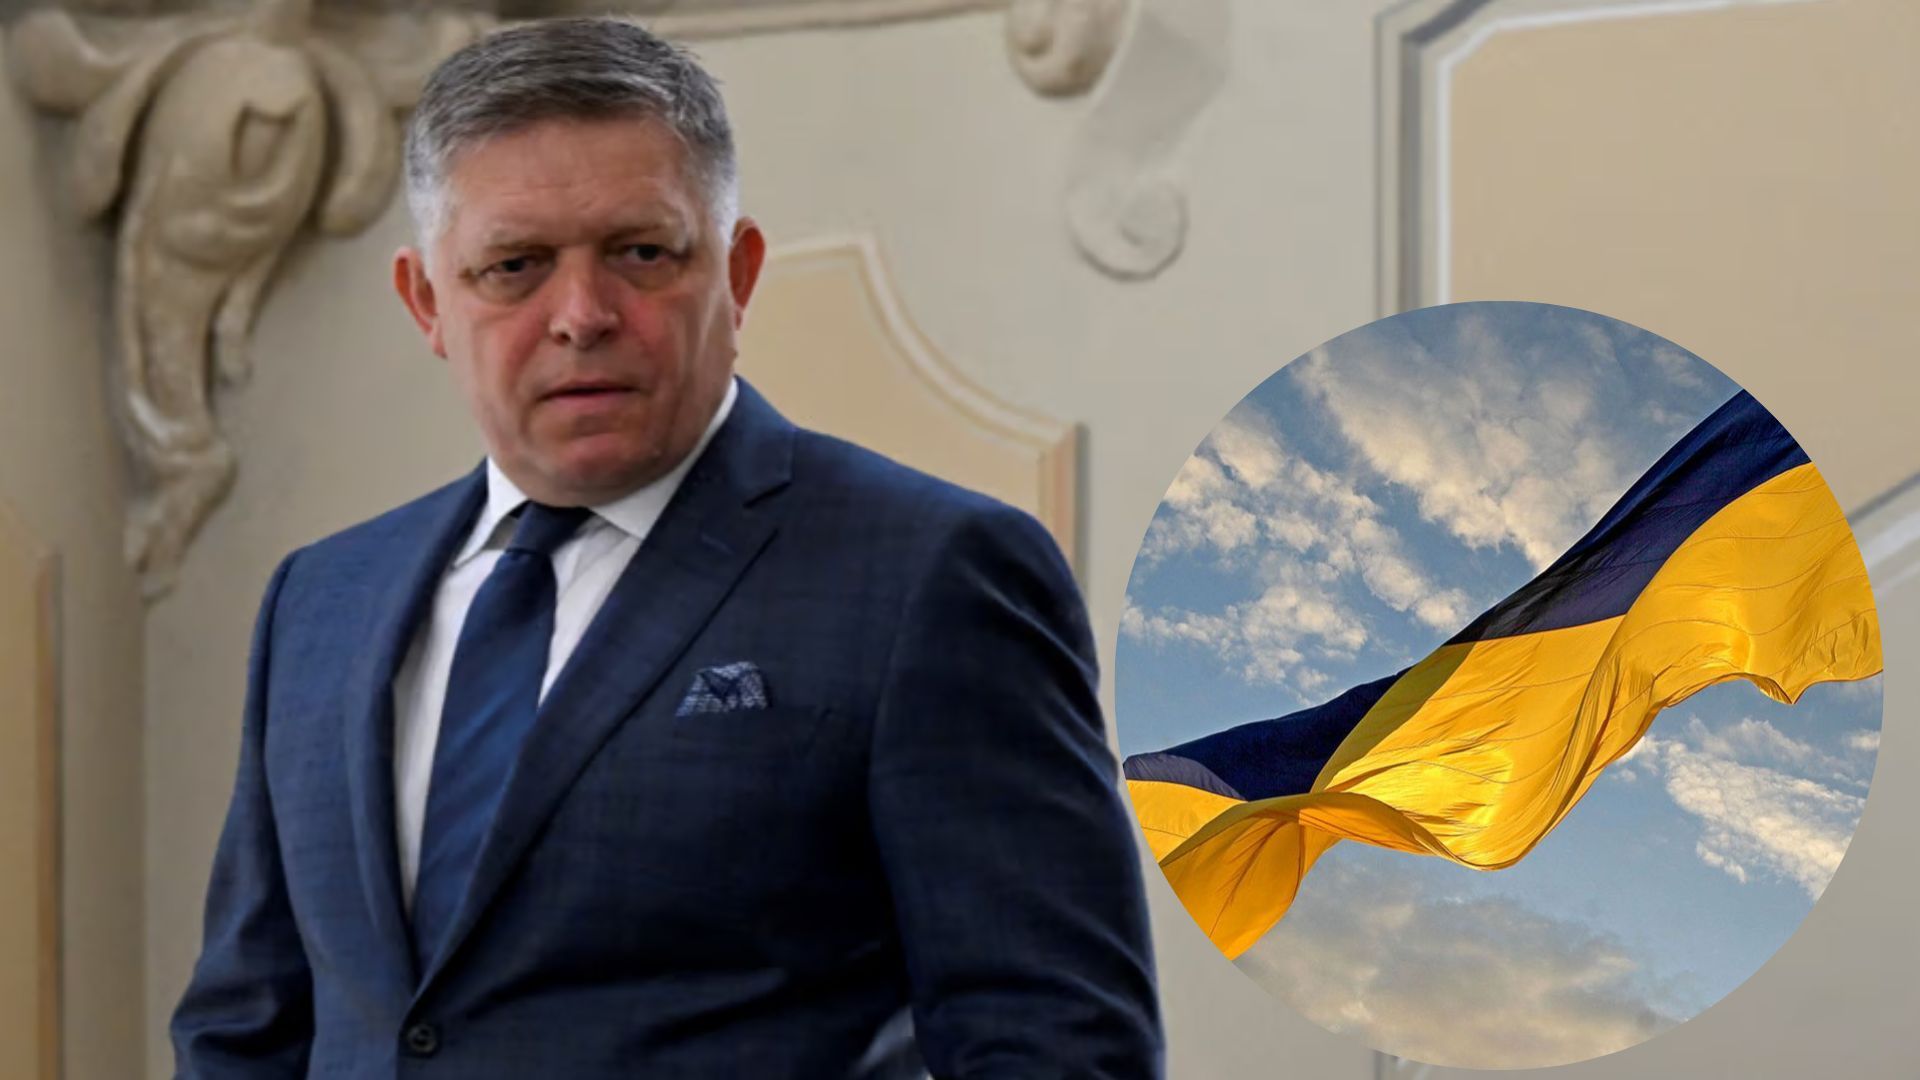 Фіцо сказав ЄС, що пояснити подальшу підтримку України через корупцію буде важко – ЗМІ